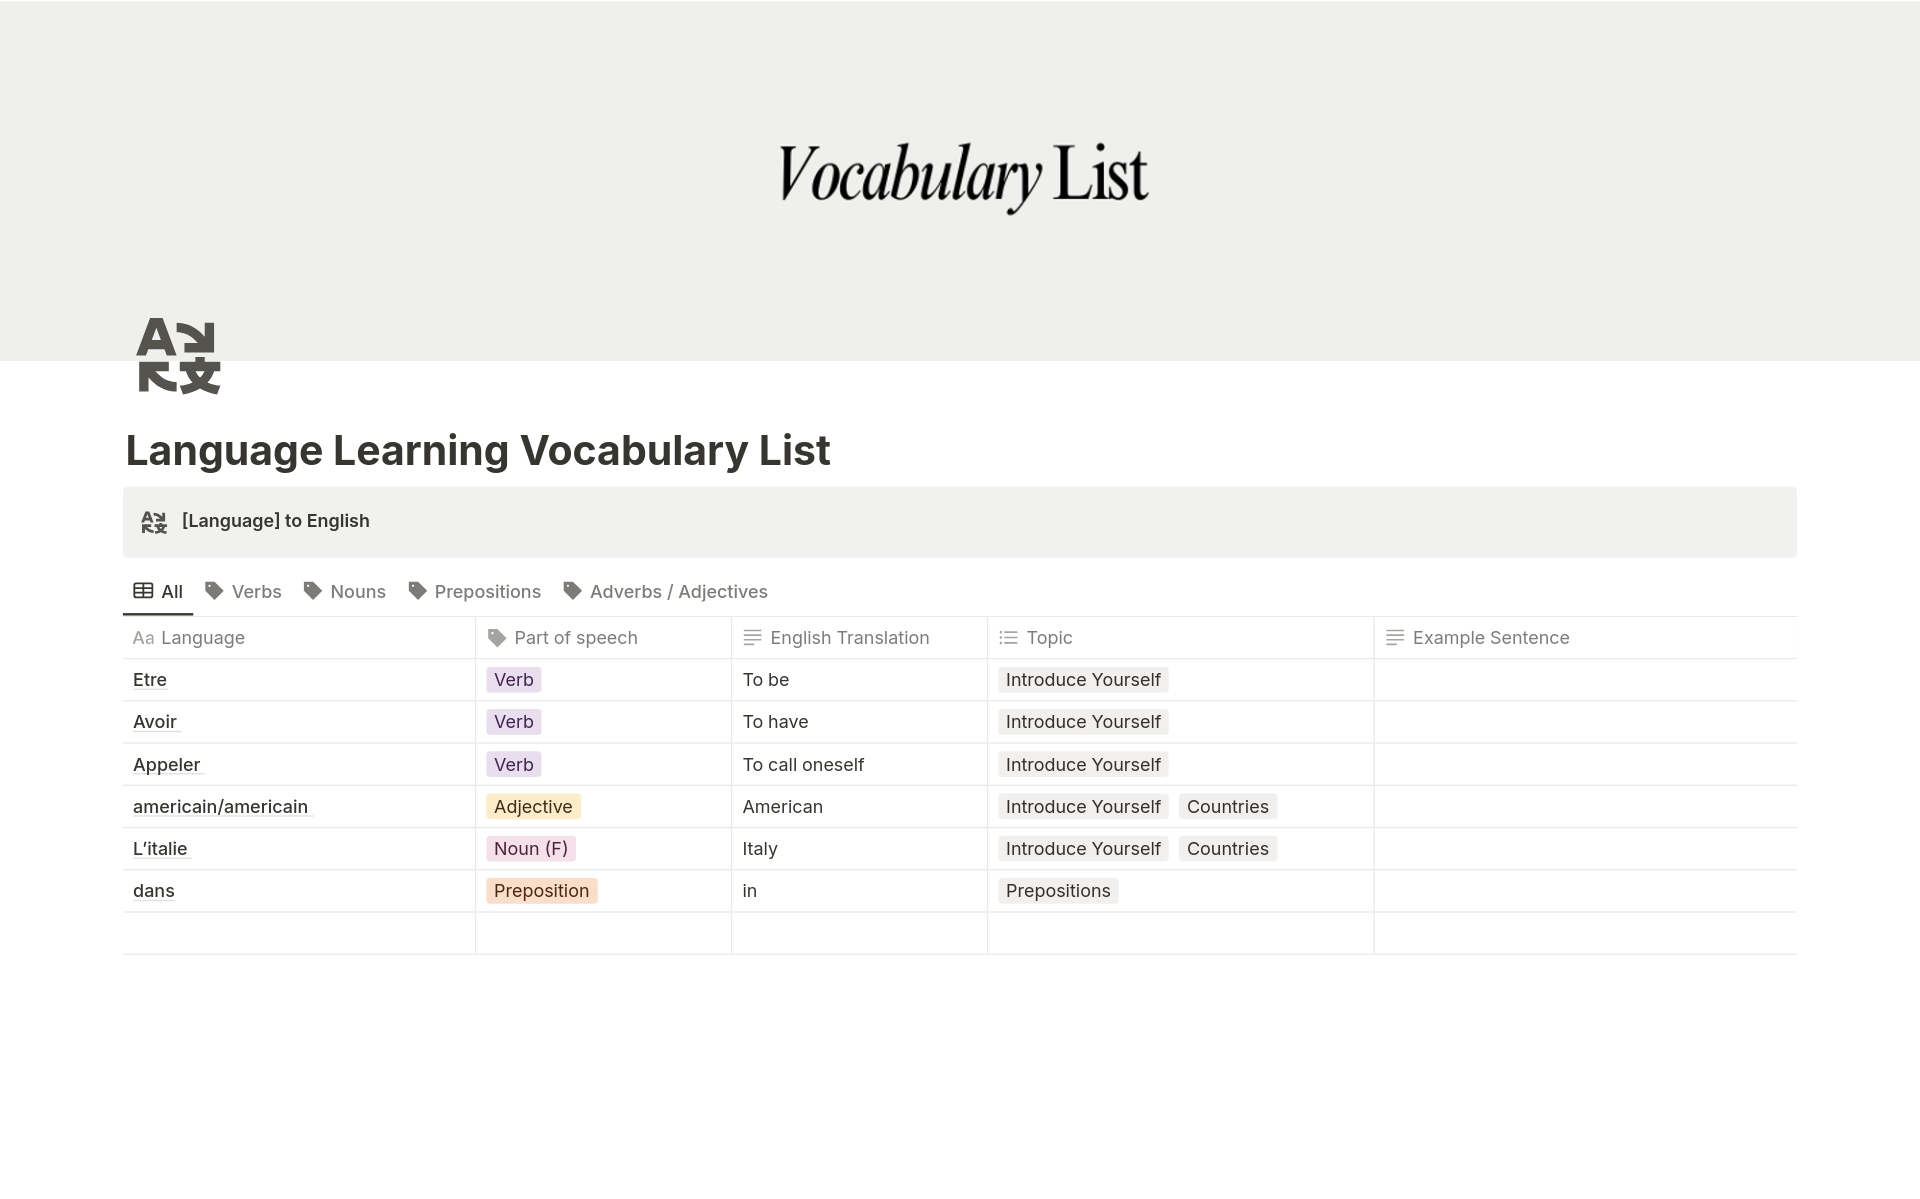 Aperçu du modèle de Language Learning Vocabulary List